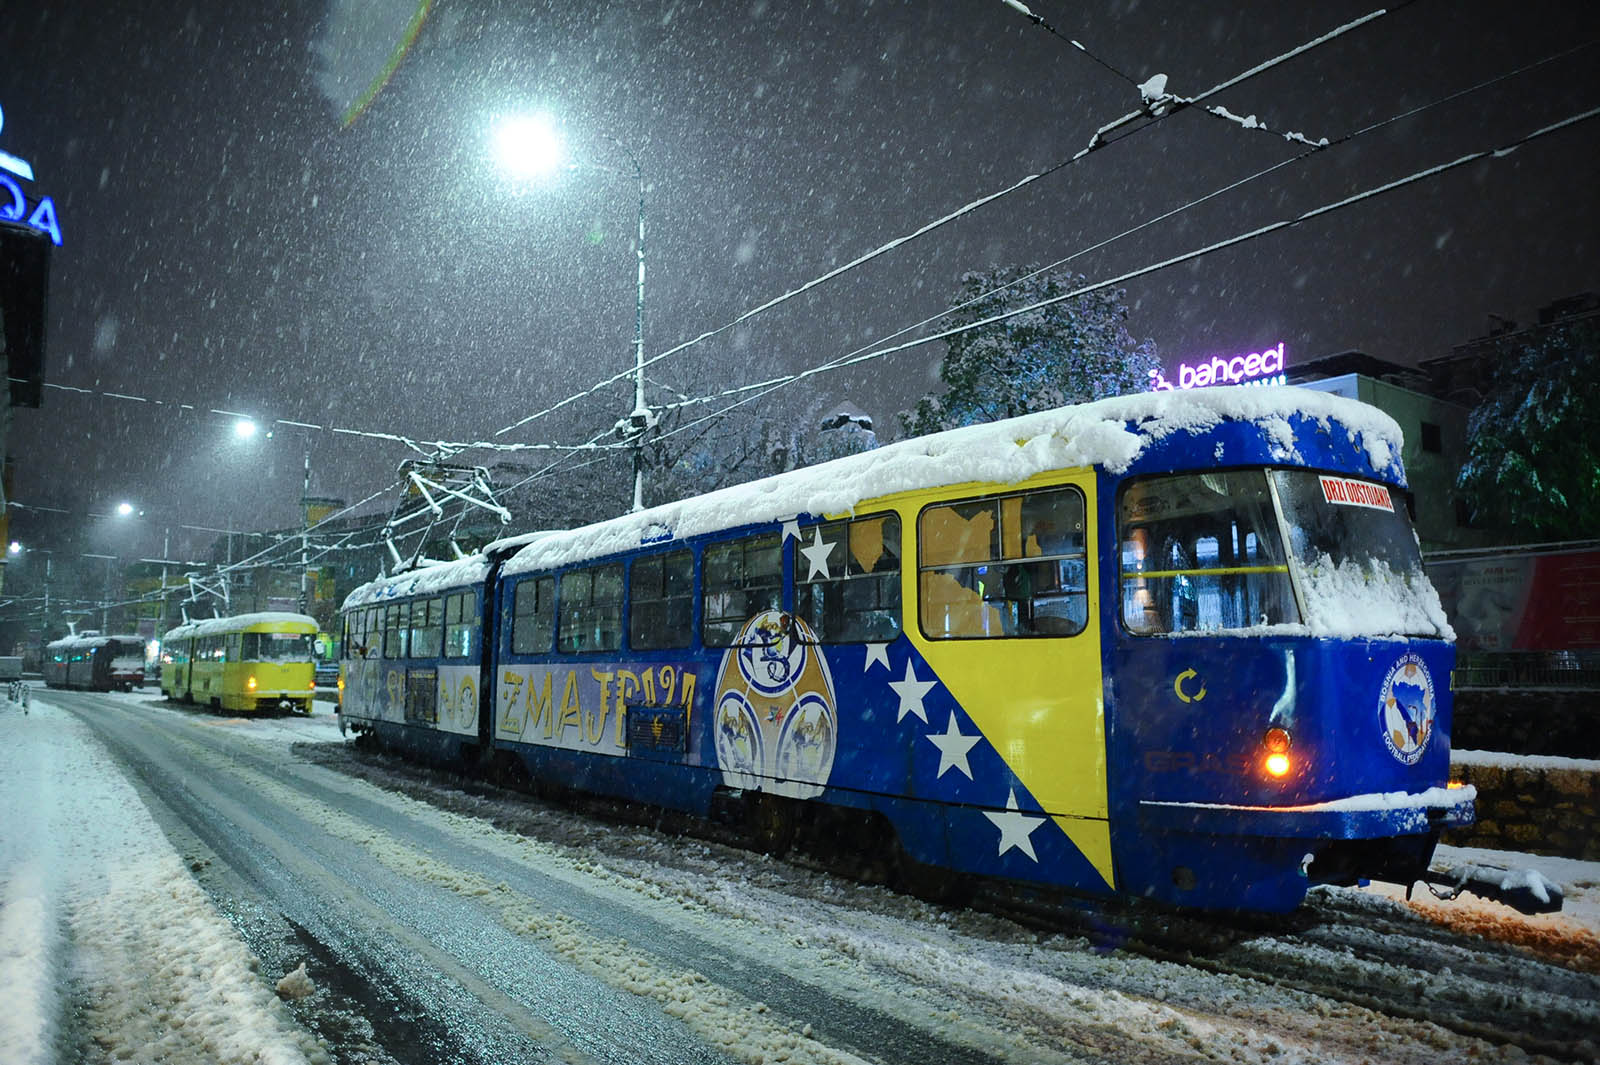 Sarajevo covered in snow 